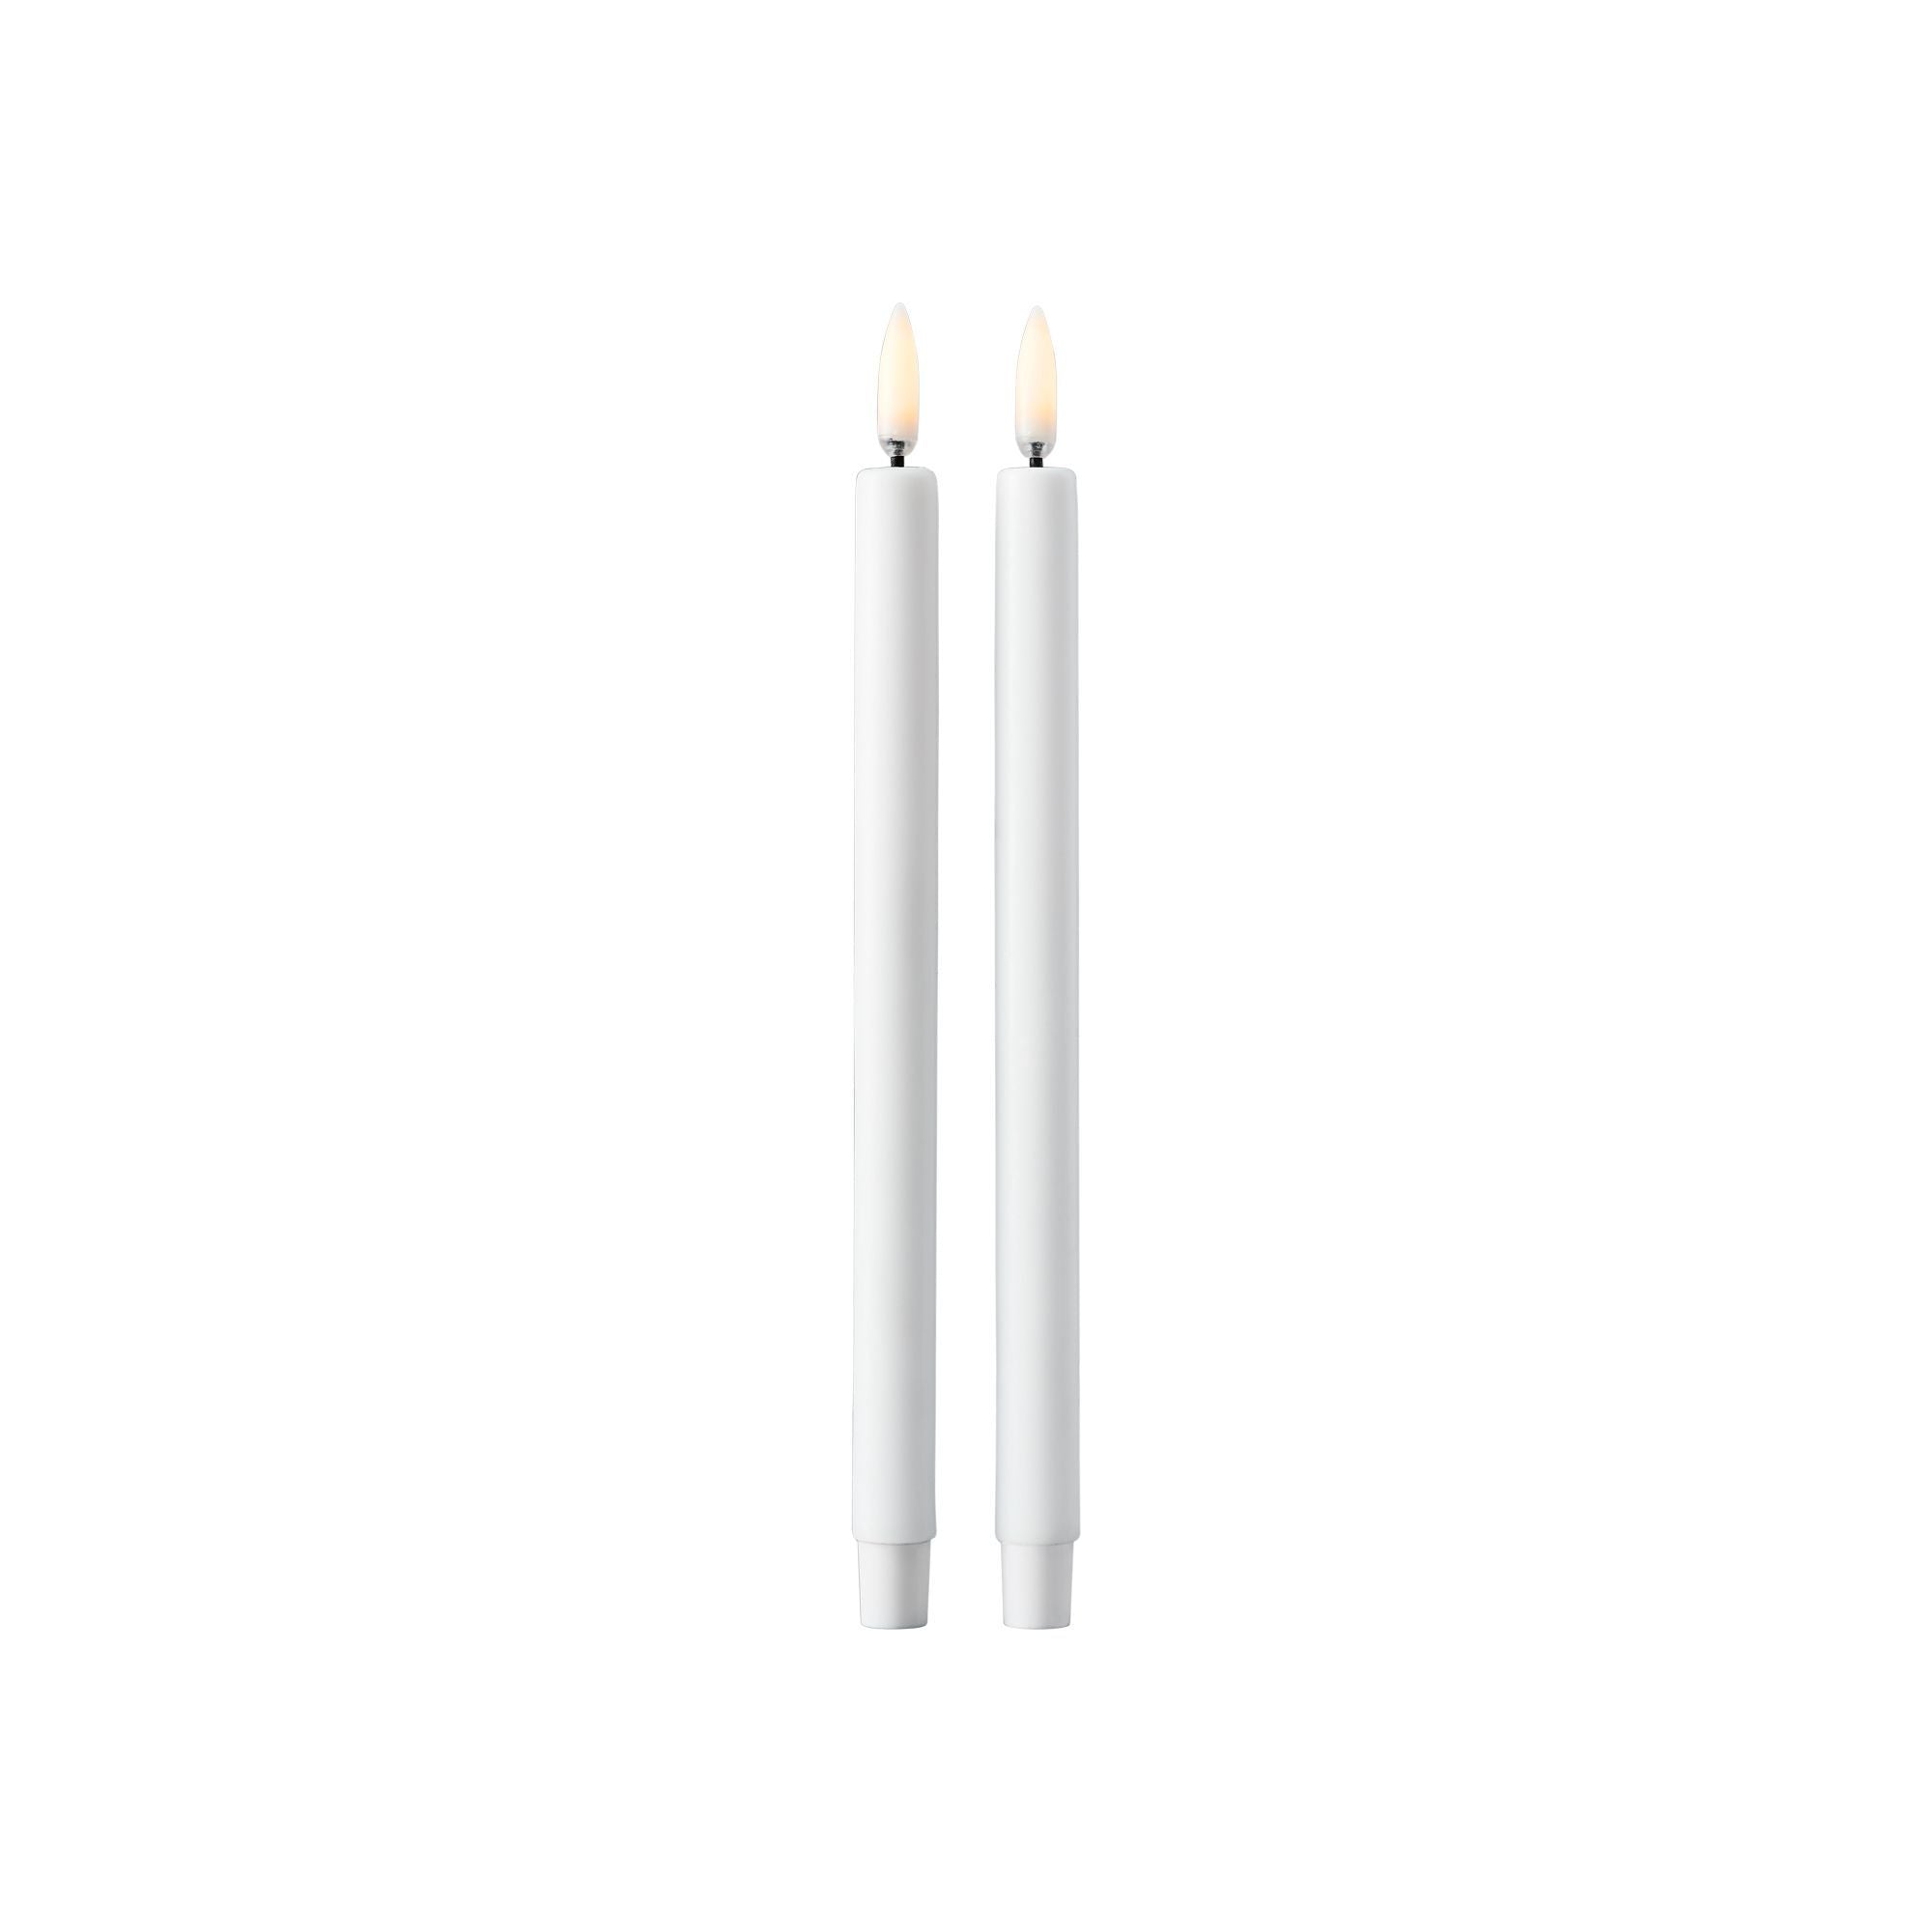 Stoff Nagel Led Candles By Uyuni Lighting Set Of 2, White